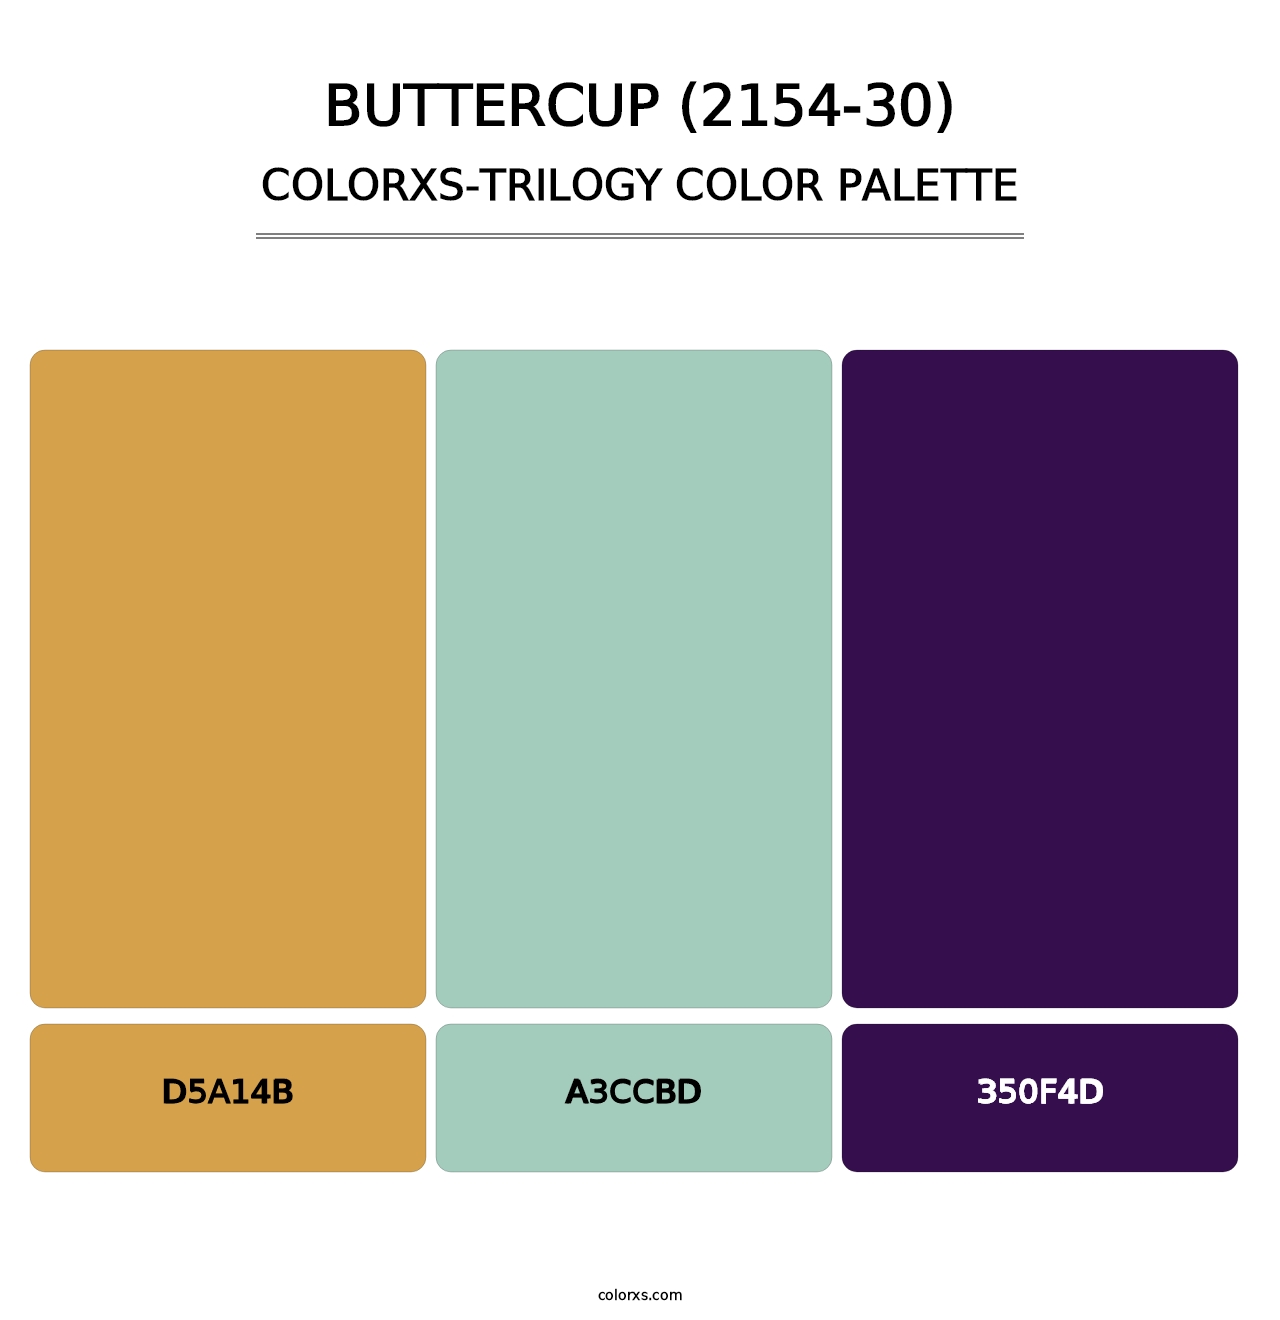 Buttercup (2154-30) - Colorxs Trilogy Palette